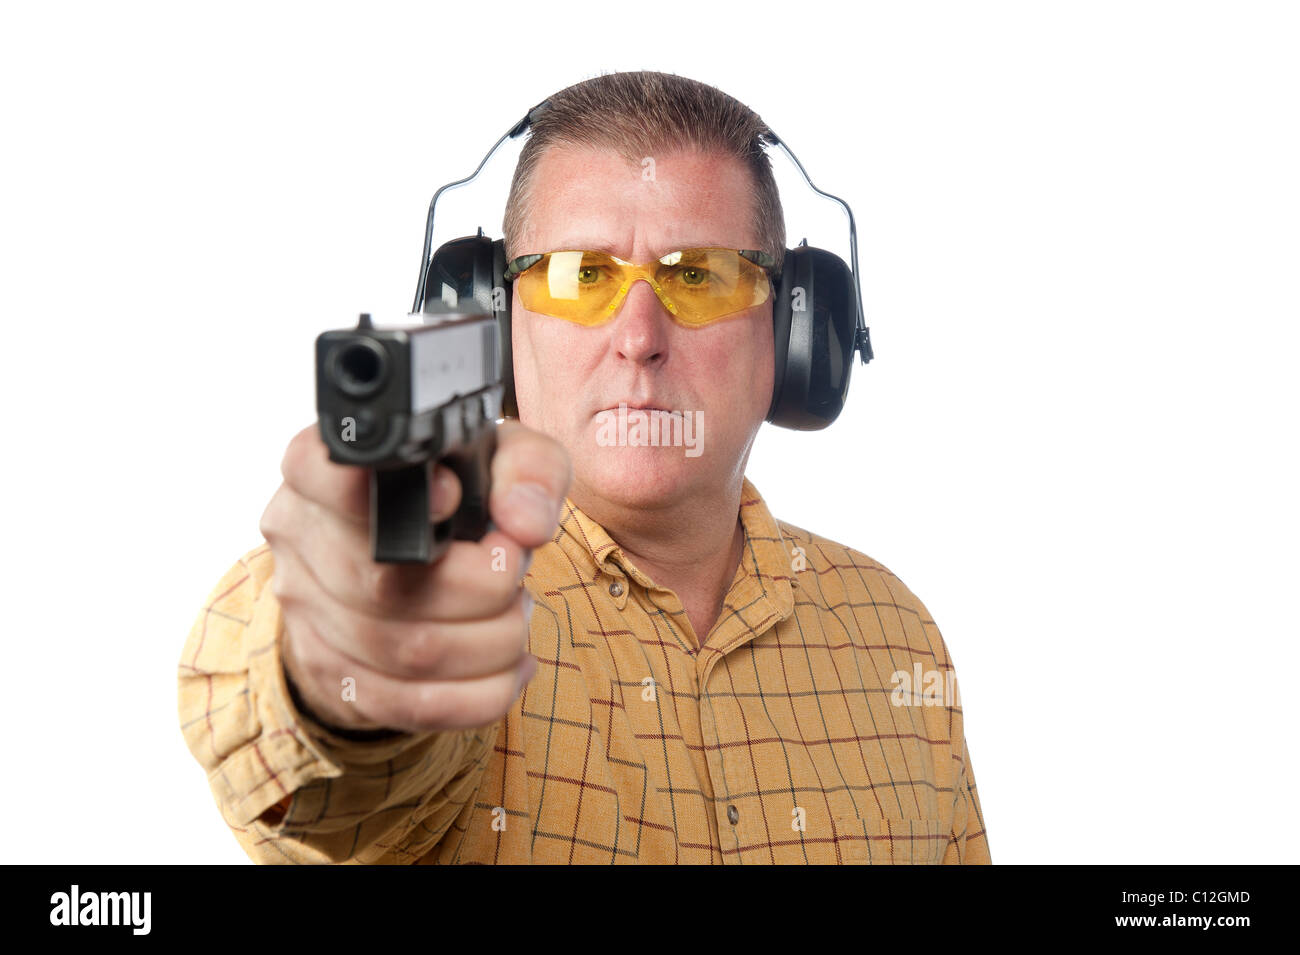 Hombre con arma pistola en la cintura. Concepto delincuencia